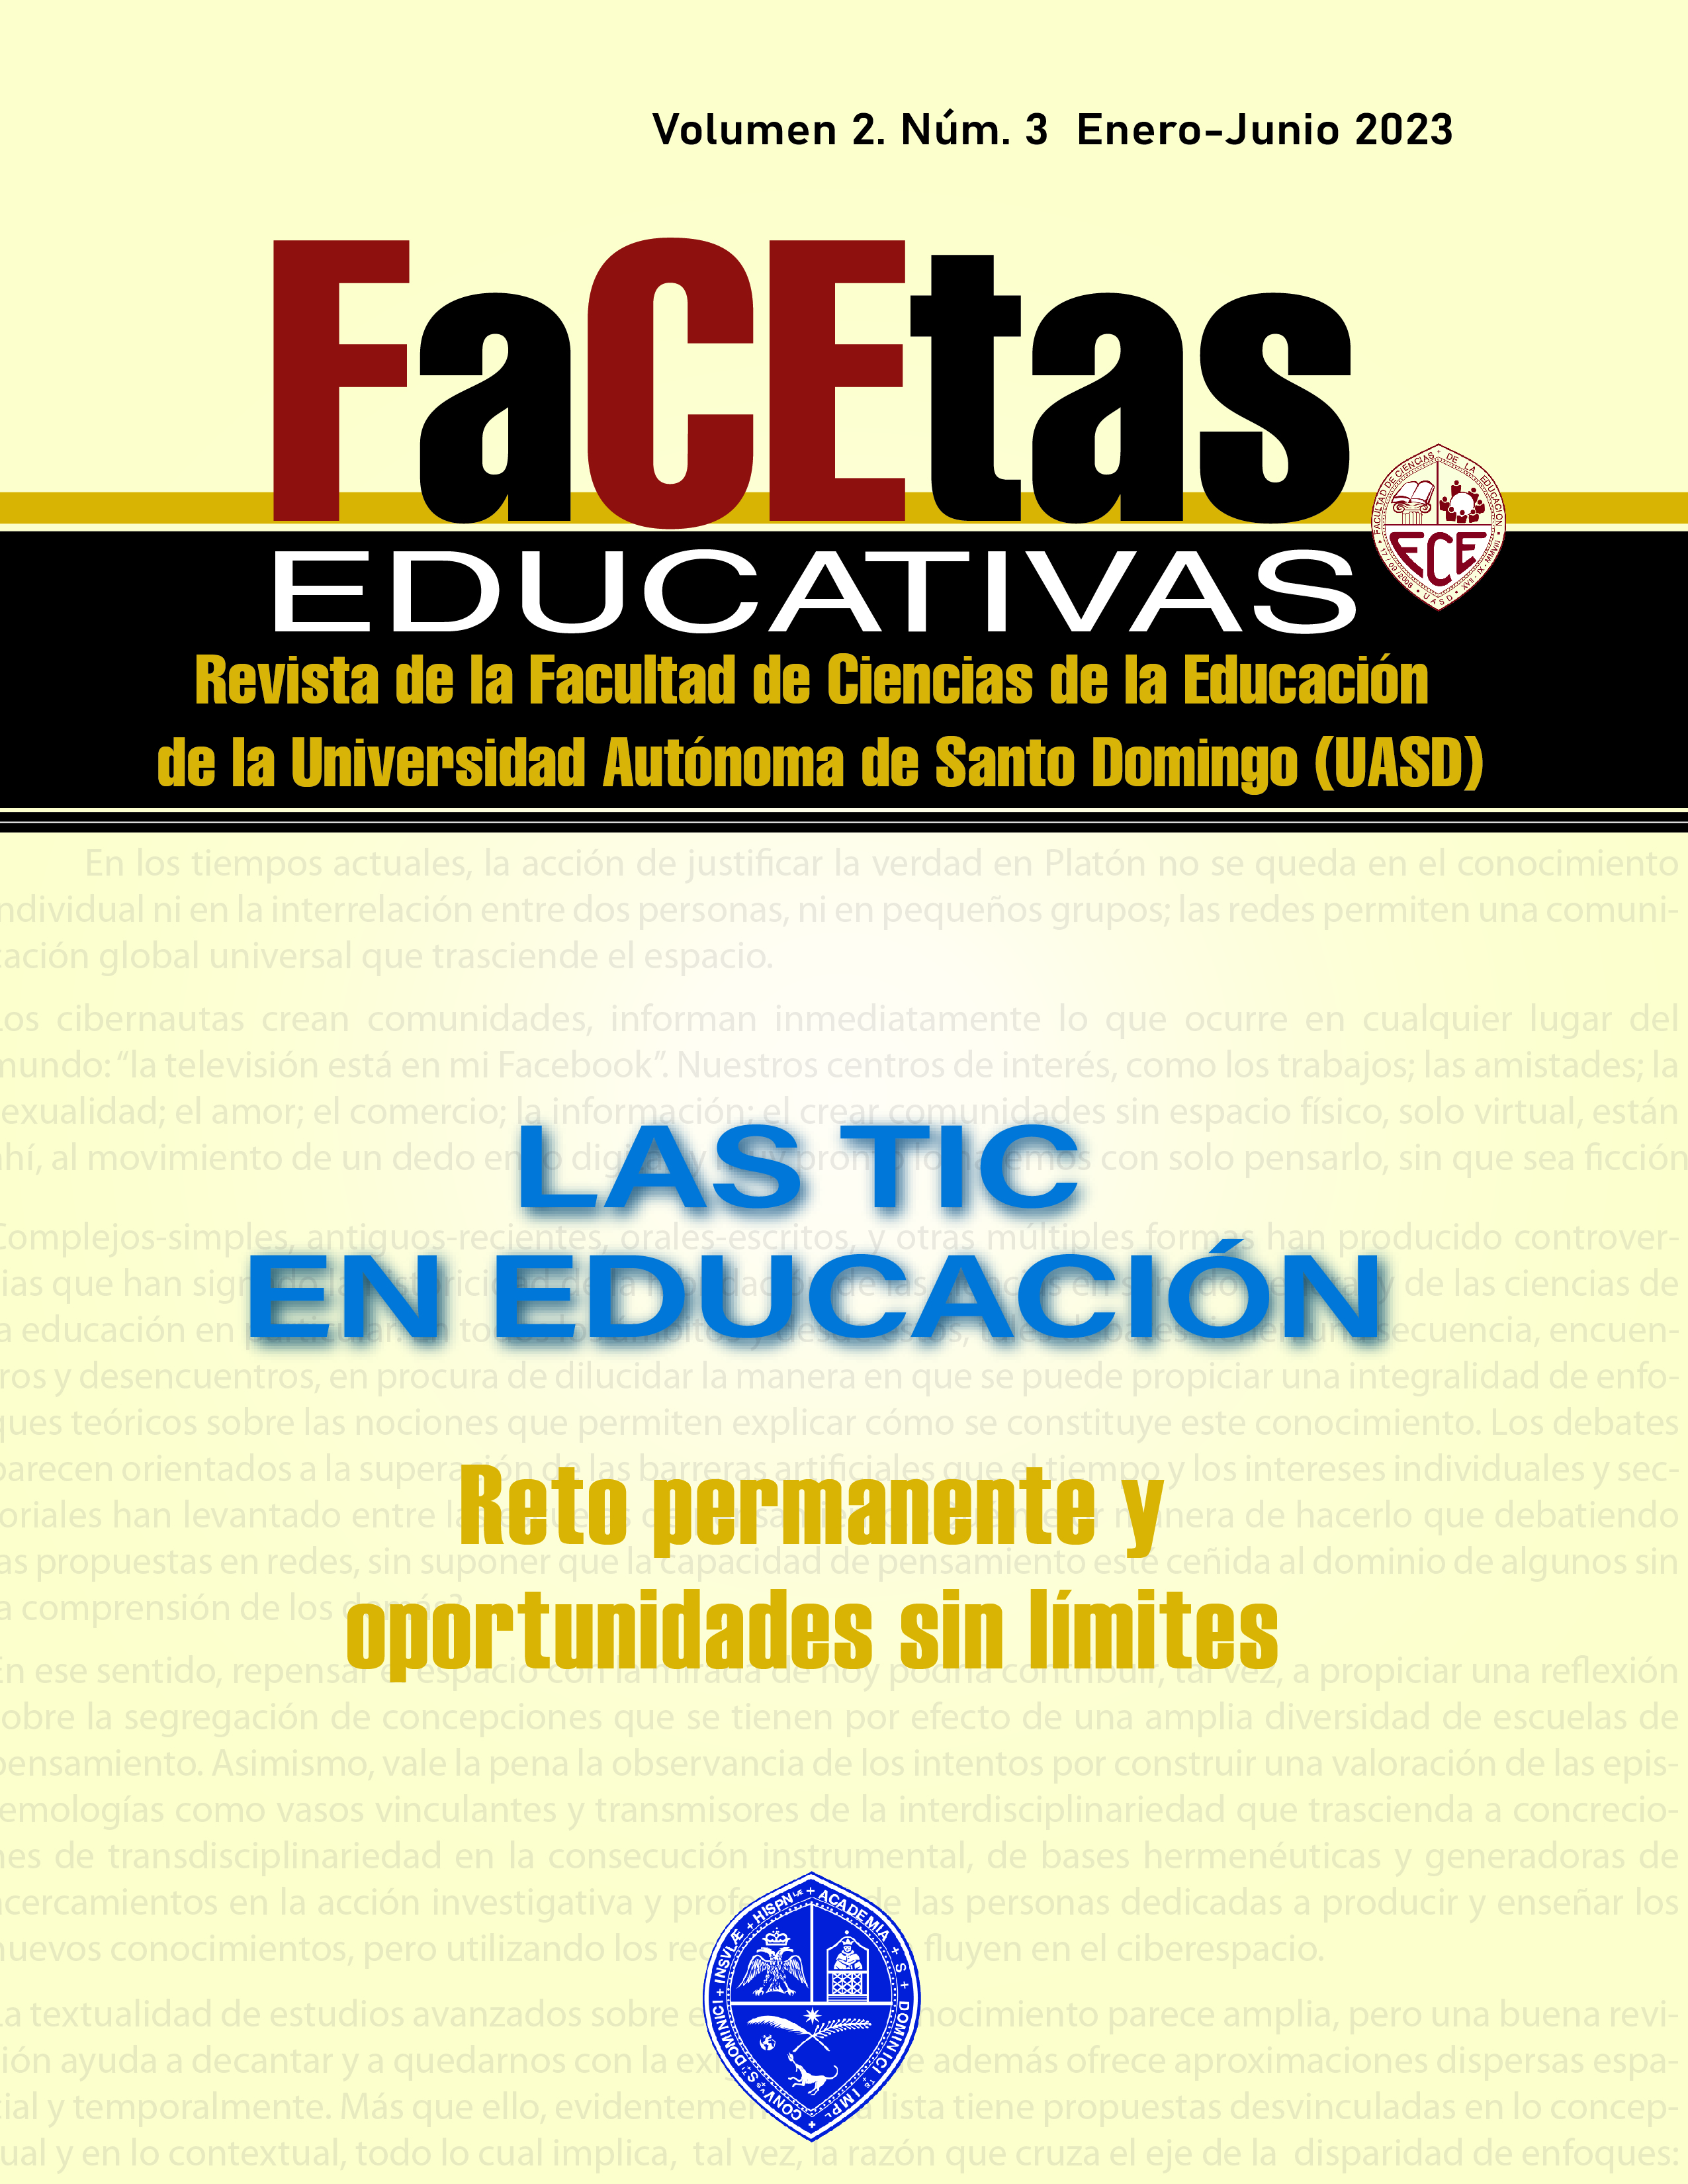 					Ver Vol. 2 Núm. 3 (2023): FACETAS EDUCATIVAS, LAS TIC EN LA EDUCACIÓN
				